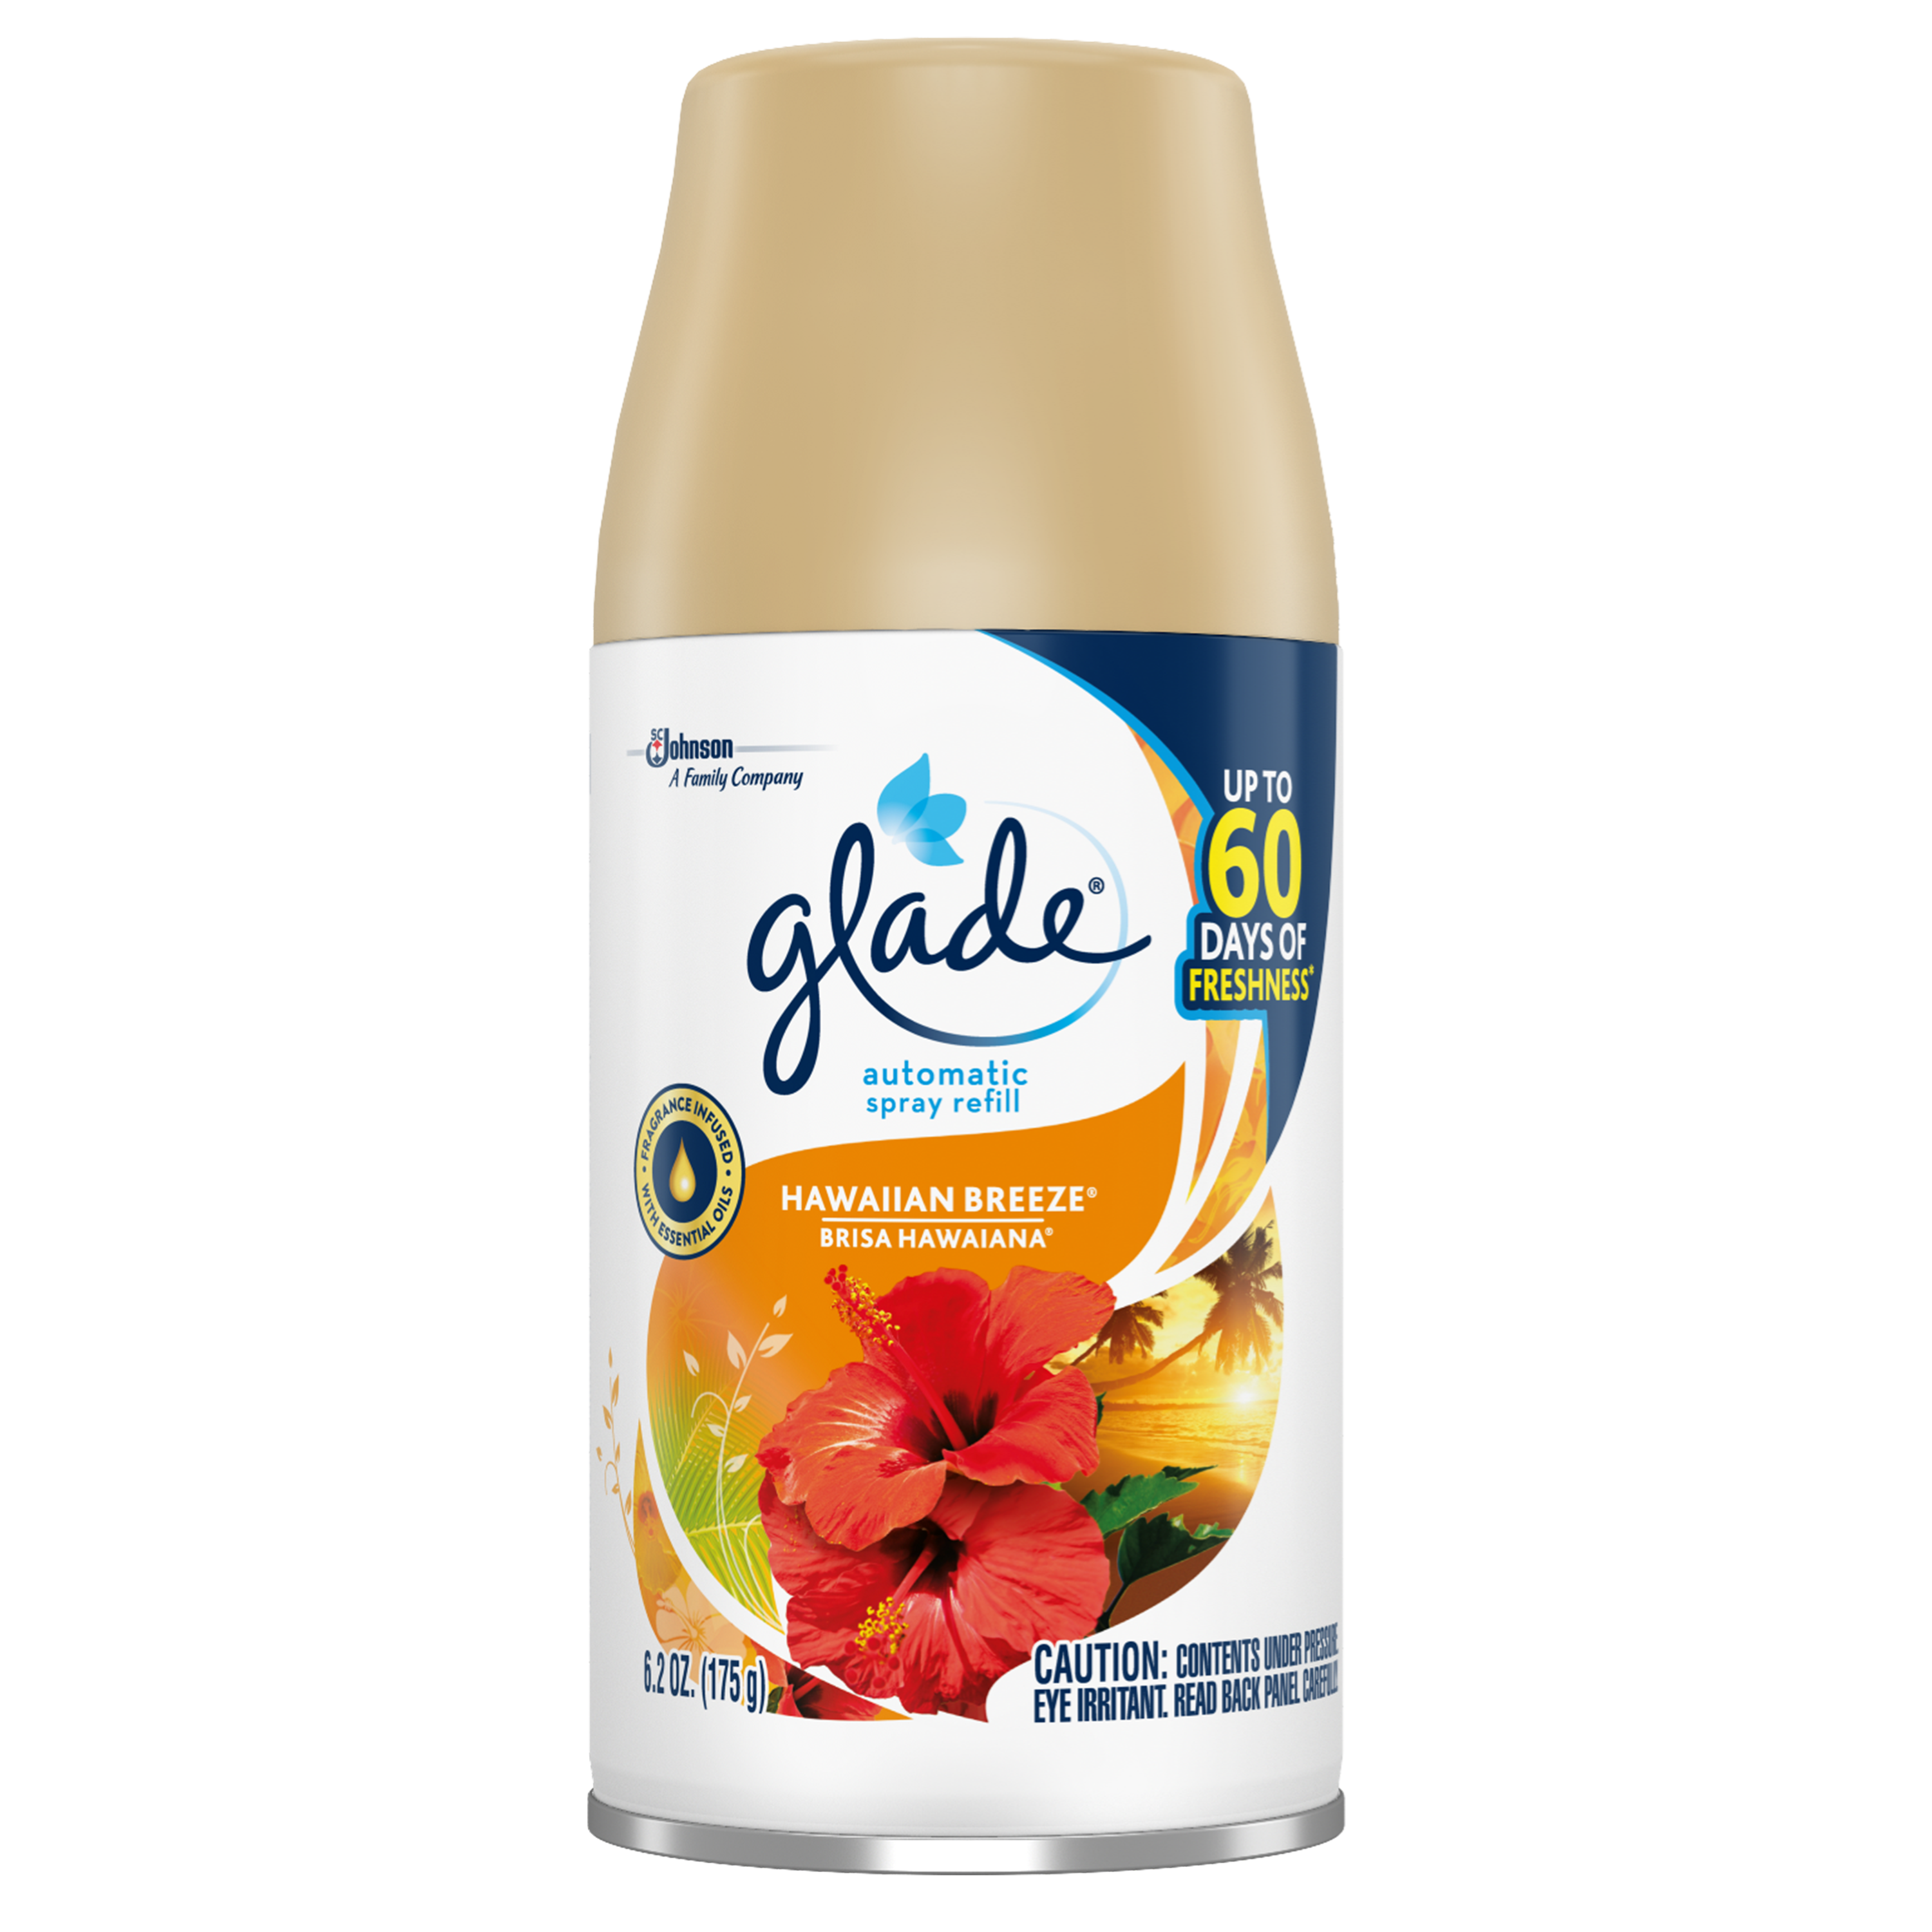 glade automatic spray refill sds